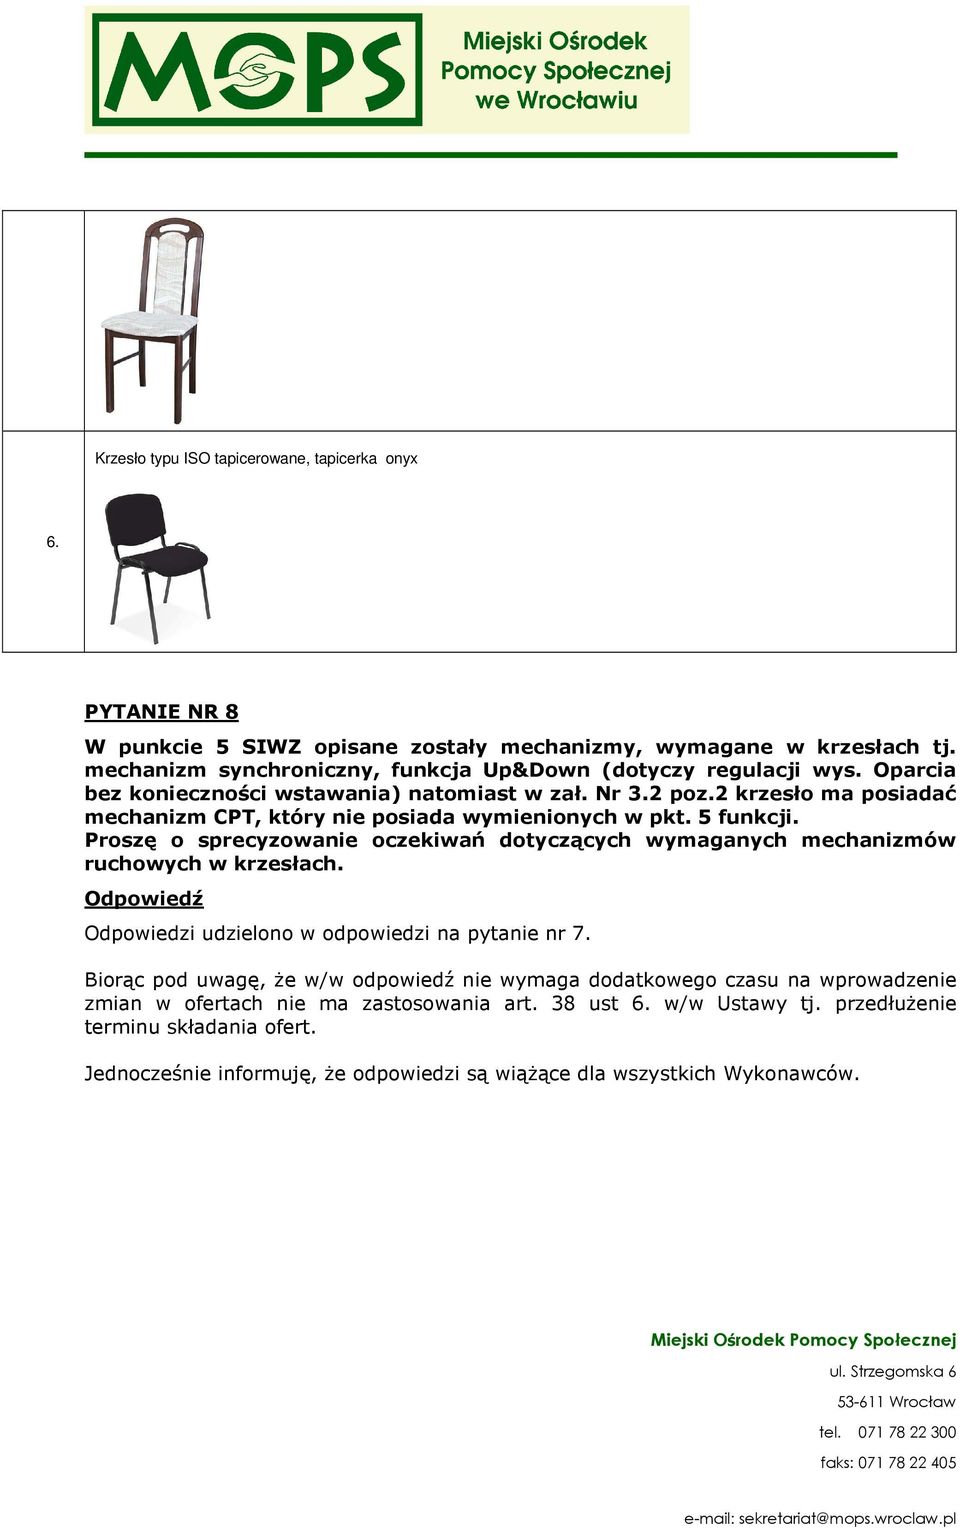 2 krzesło ma posiadać mechanizm CPT, który nie posiada wymienionych w pkt. 5 funkcji. Proszę o sprecyzowanie oczekiwań dotyczących wymaganych mechanizmów ruchowych w krzesłach.